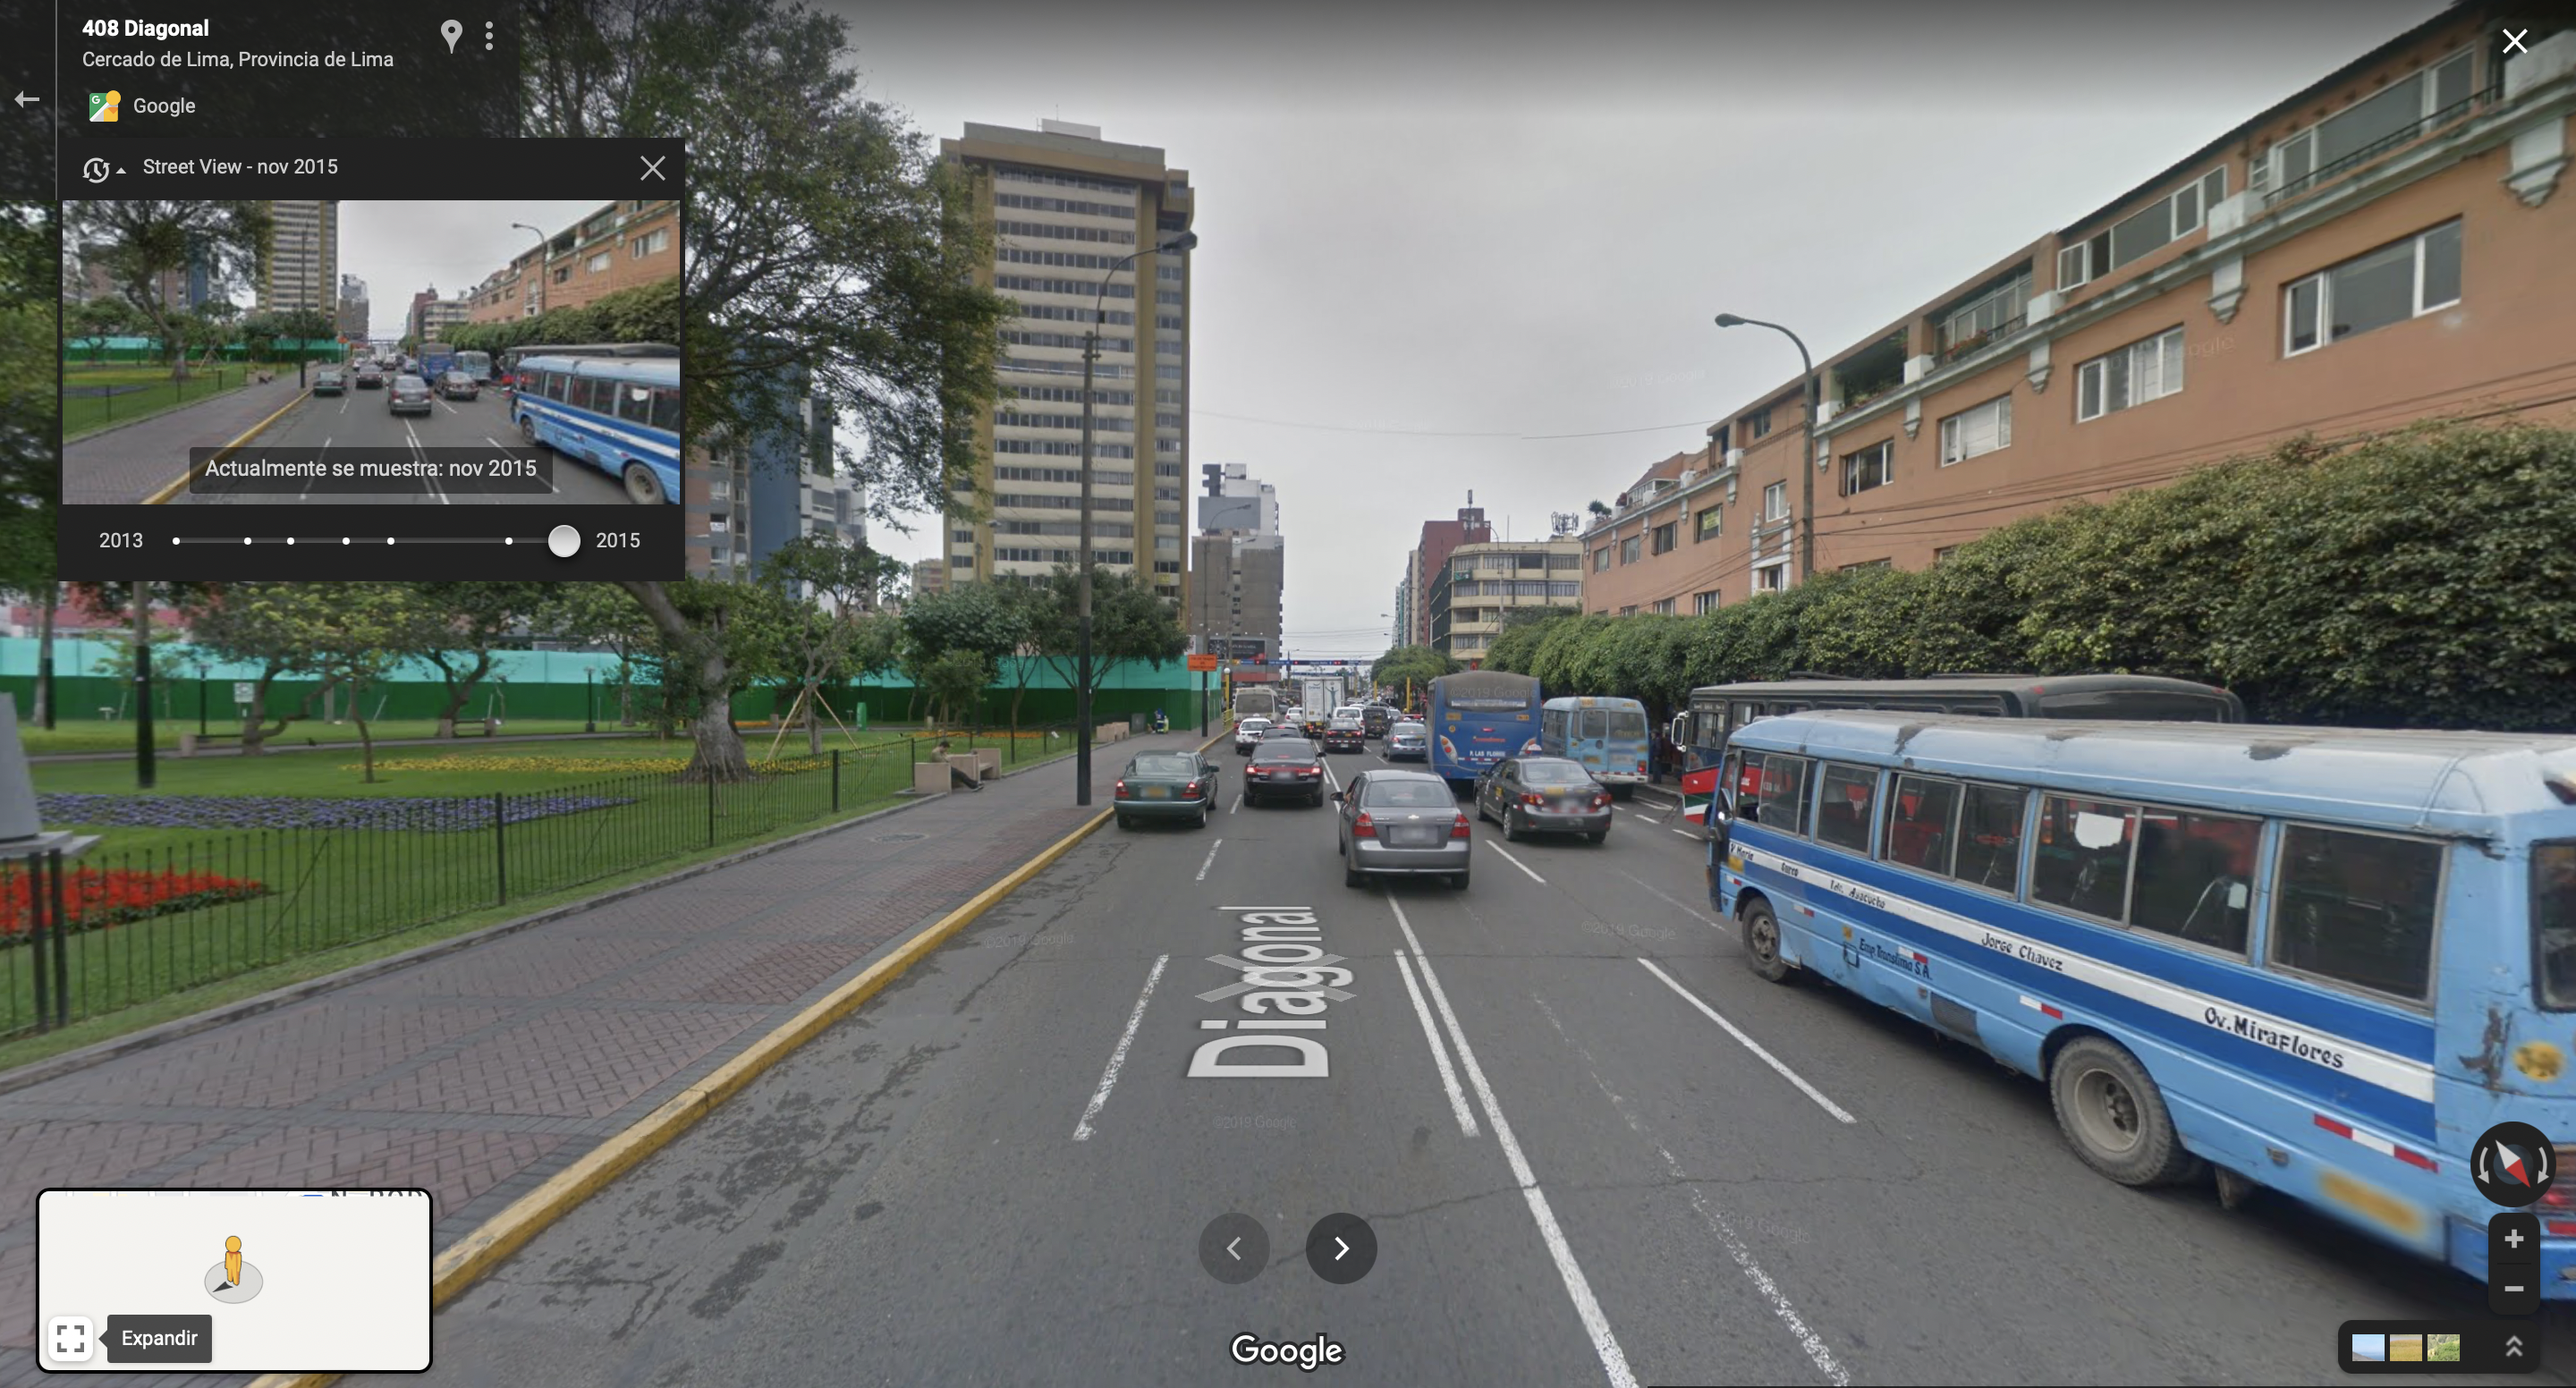 El Parque Kennedy en la ciudad de Lima, Perú vista en Google Maps en el año 2015. (foto: Google Maps/Jose Arana)